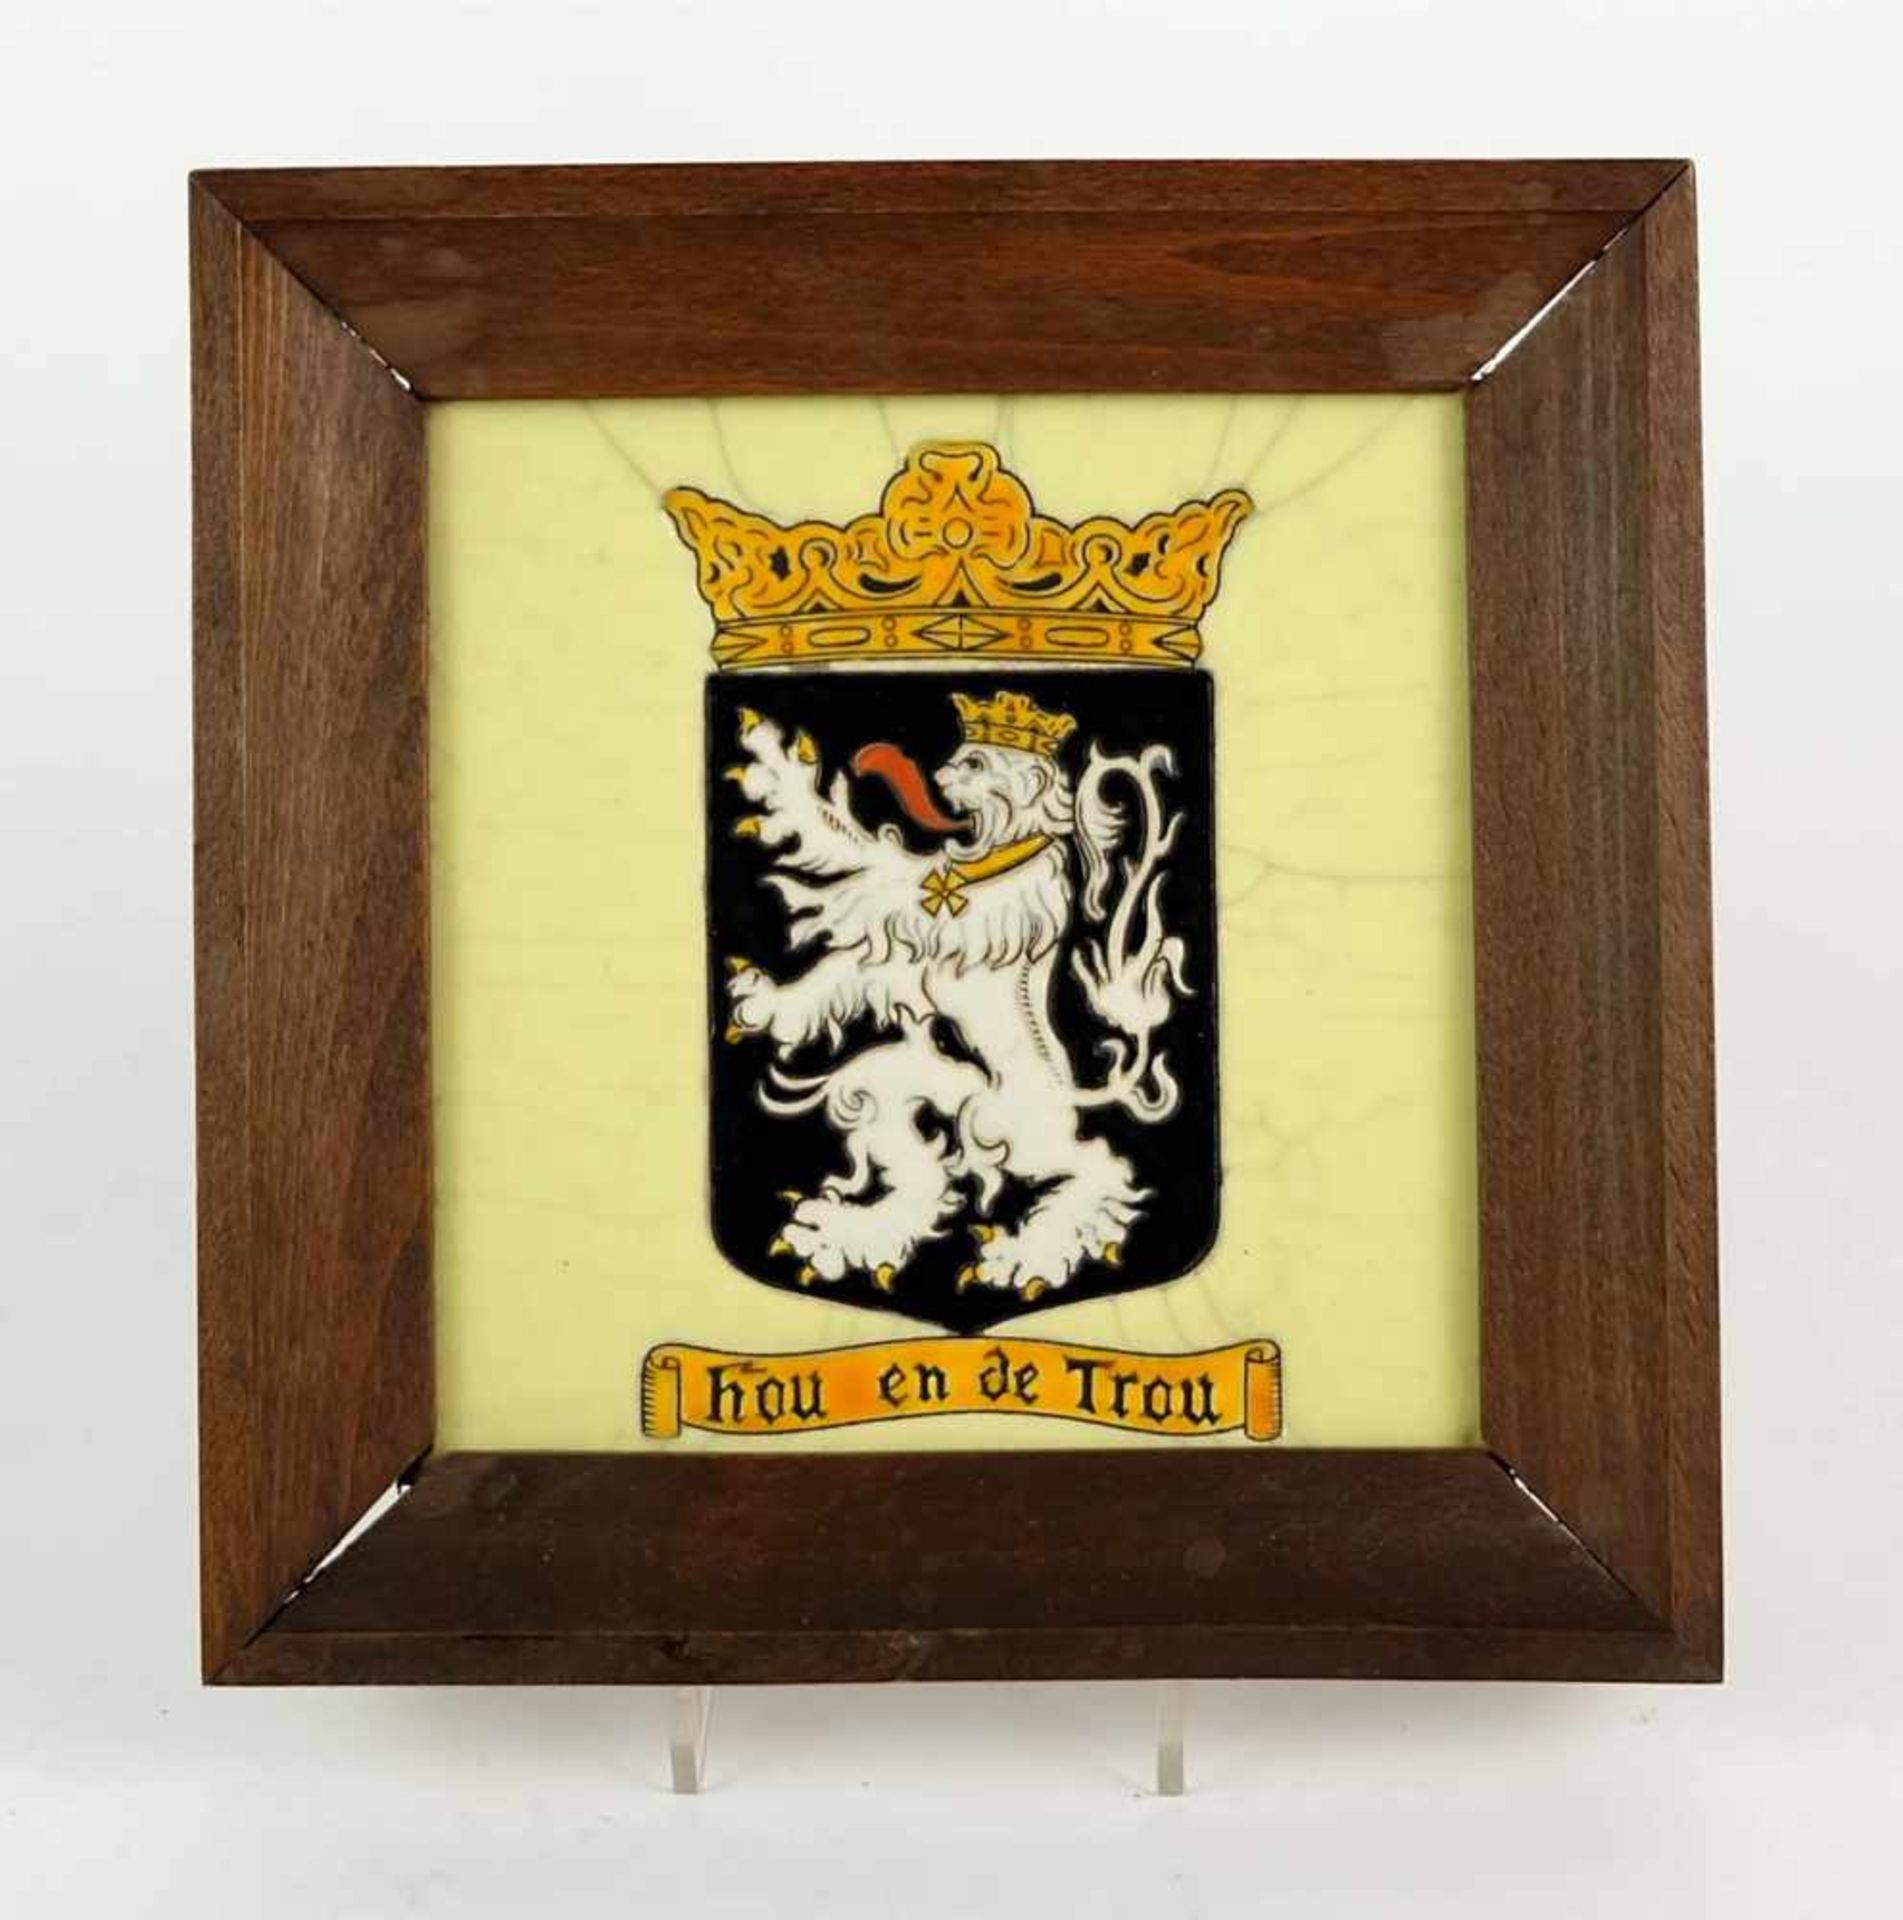 BILDFLIESE, Wappen von Gent, Wahlspruch "Hou en de Trou", verso Widmung auf Papieretikett "Die 10.